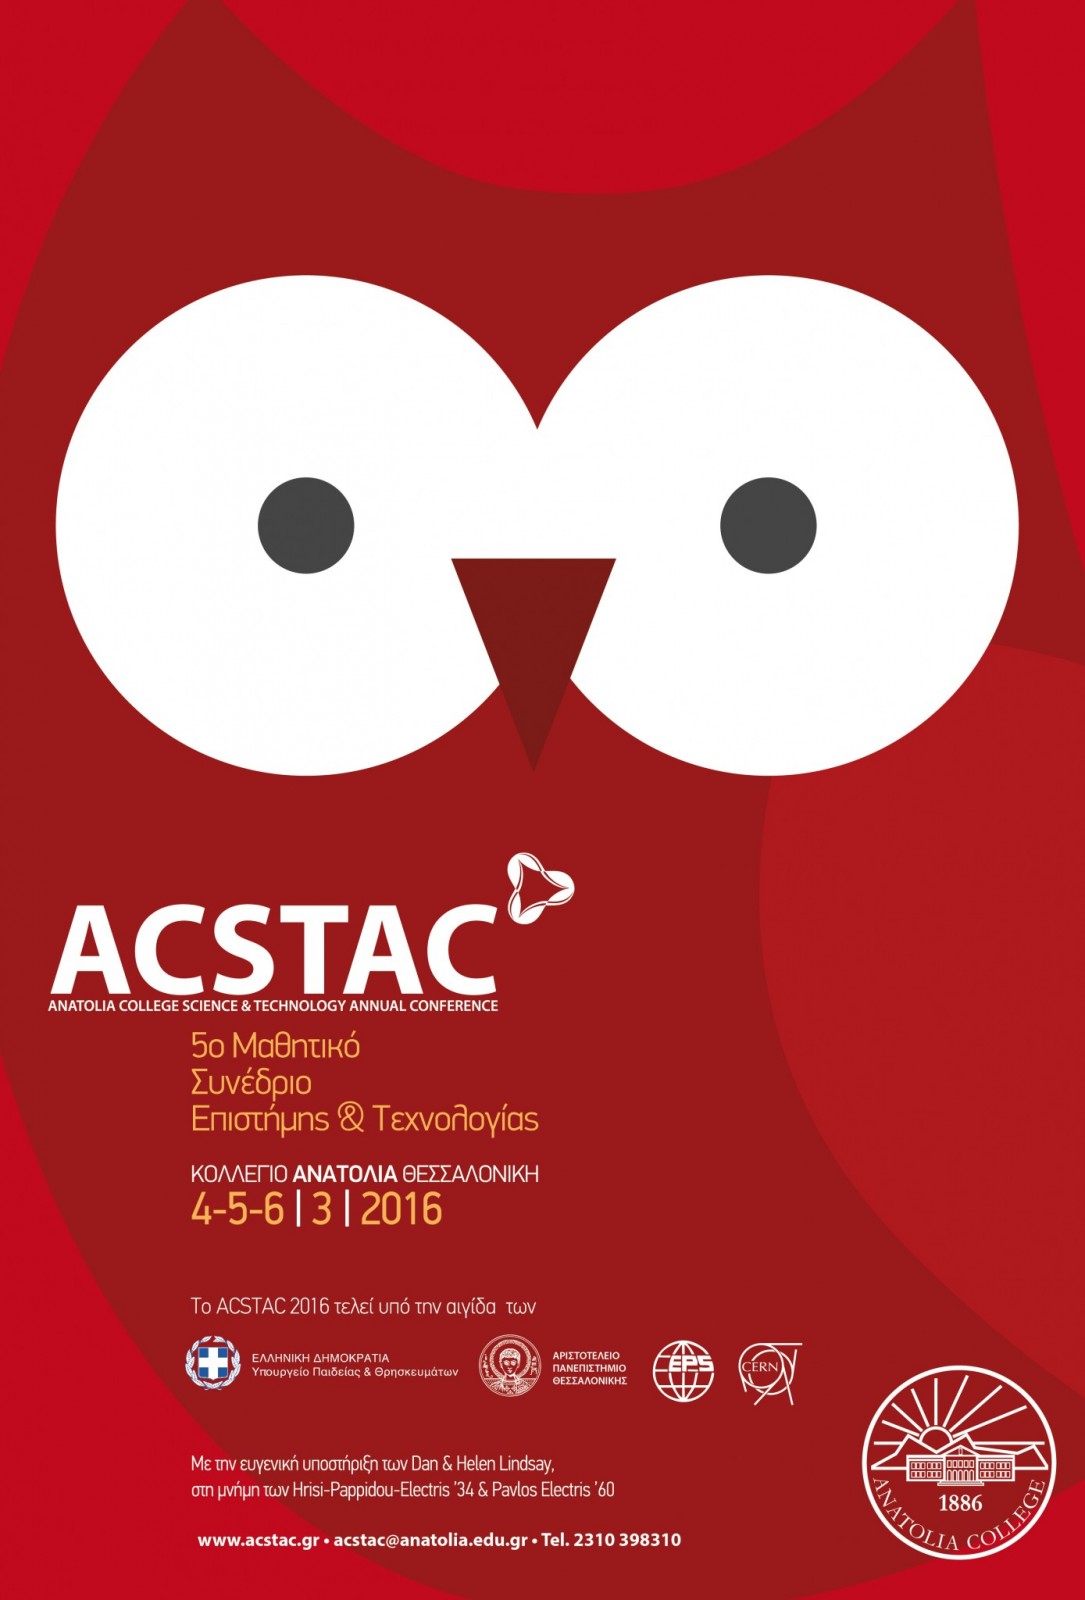 Δηλώσεις συμμετοχής για το 5ο Μαθητικό Συνέδριο Επιστήμης & Τεχνολογίας ACSTAC 2016